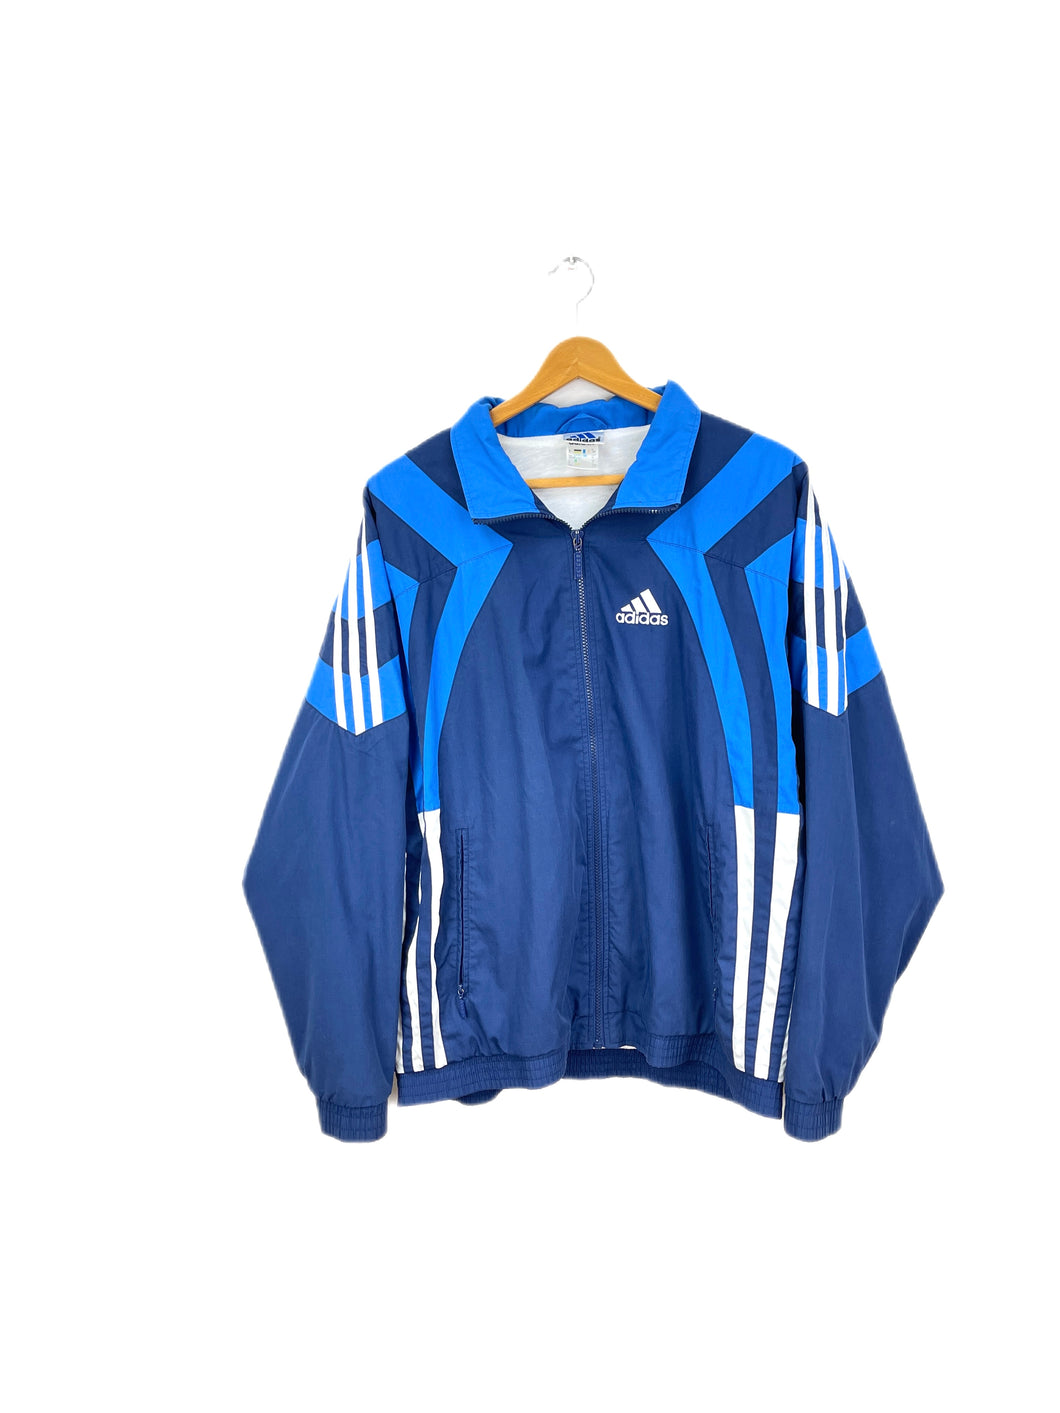 Adidas Jacket - Large